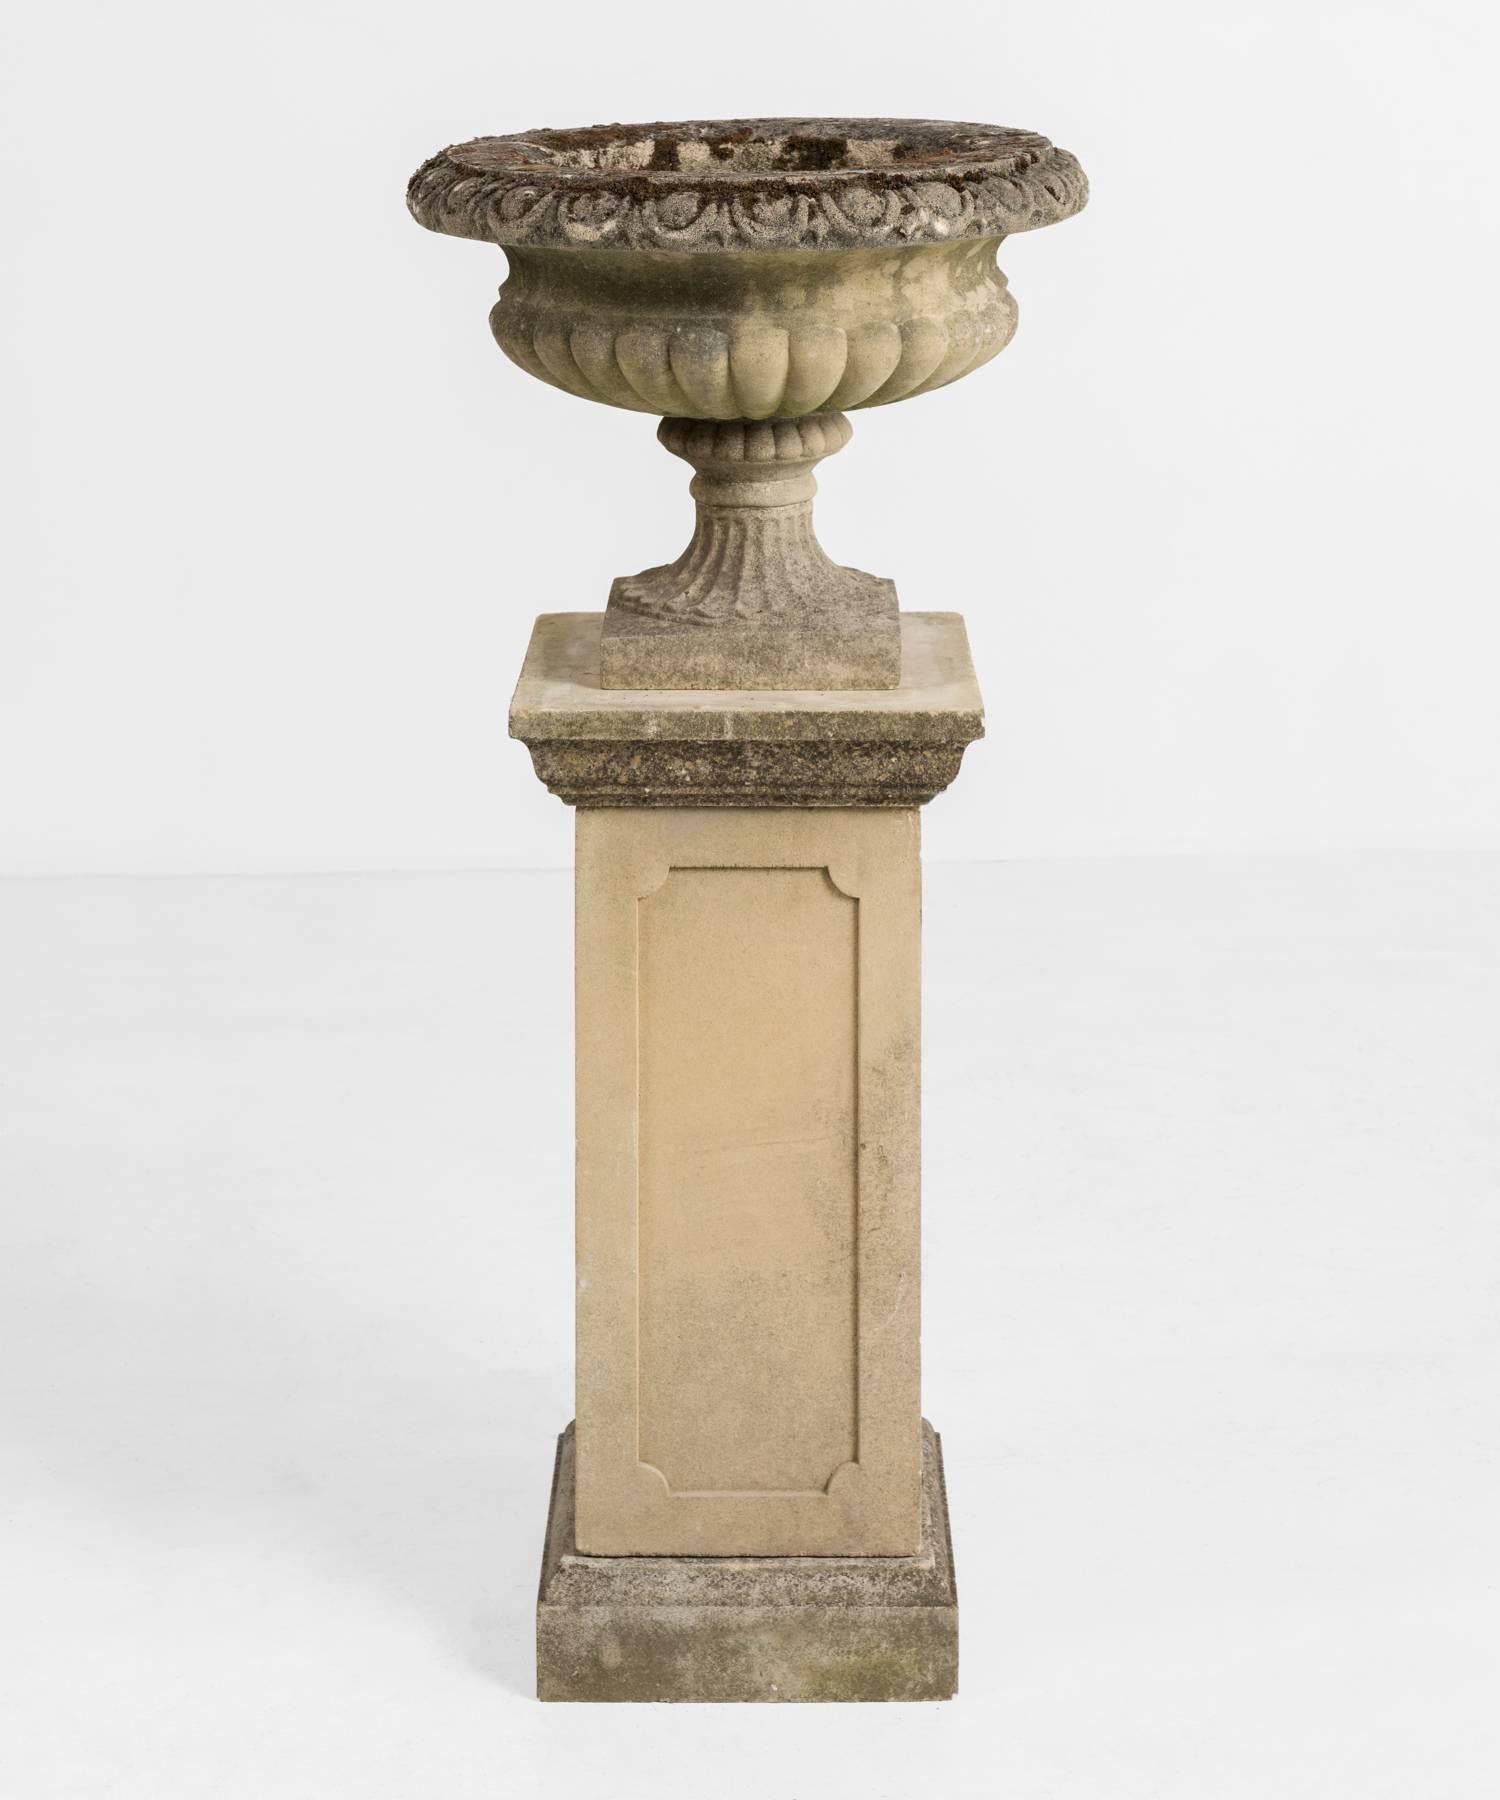 urns on pedestals